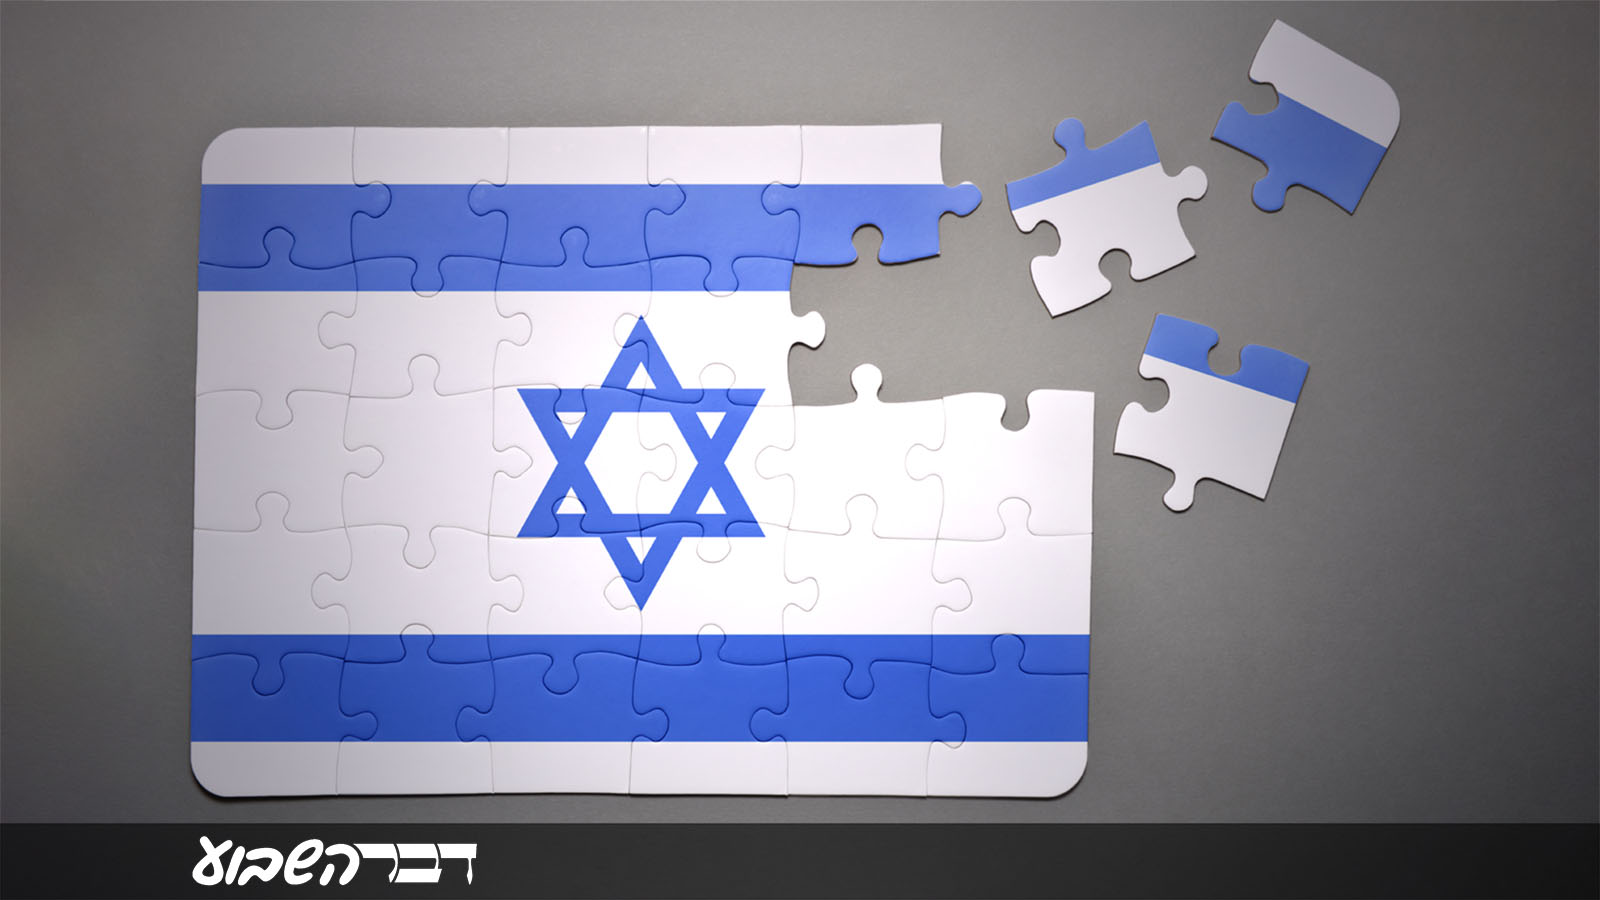 חלקי פאזל מרכיבים את דגל ישראל (shutterstock)